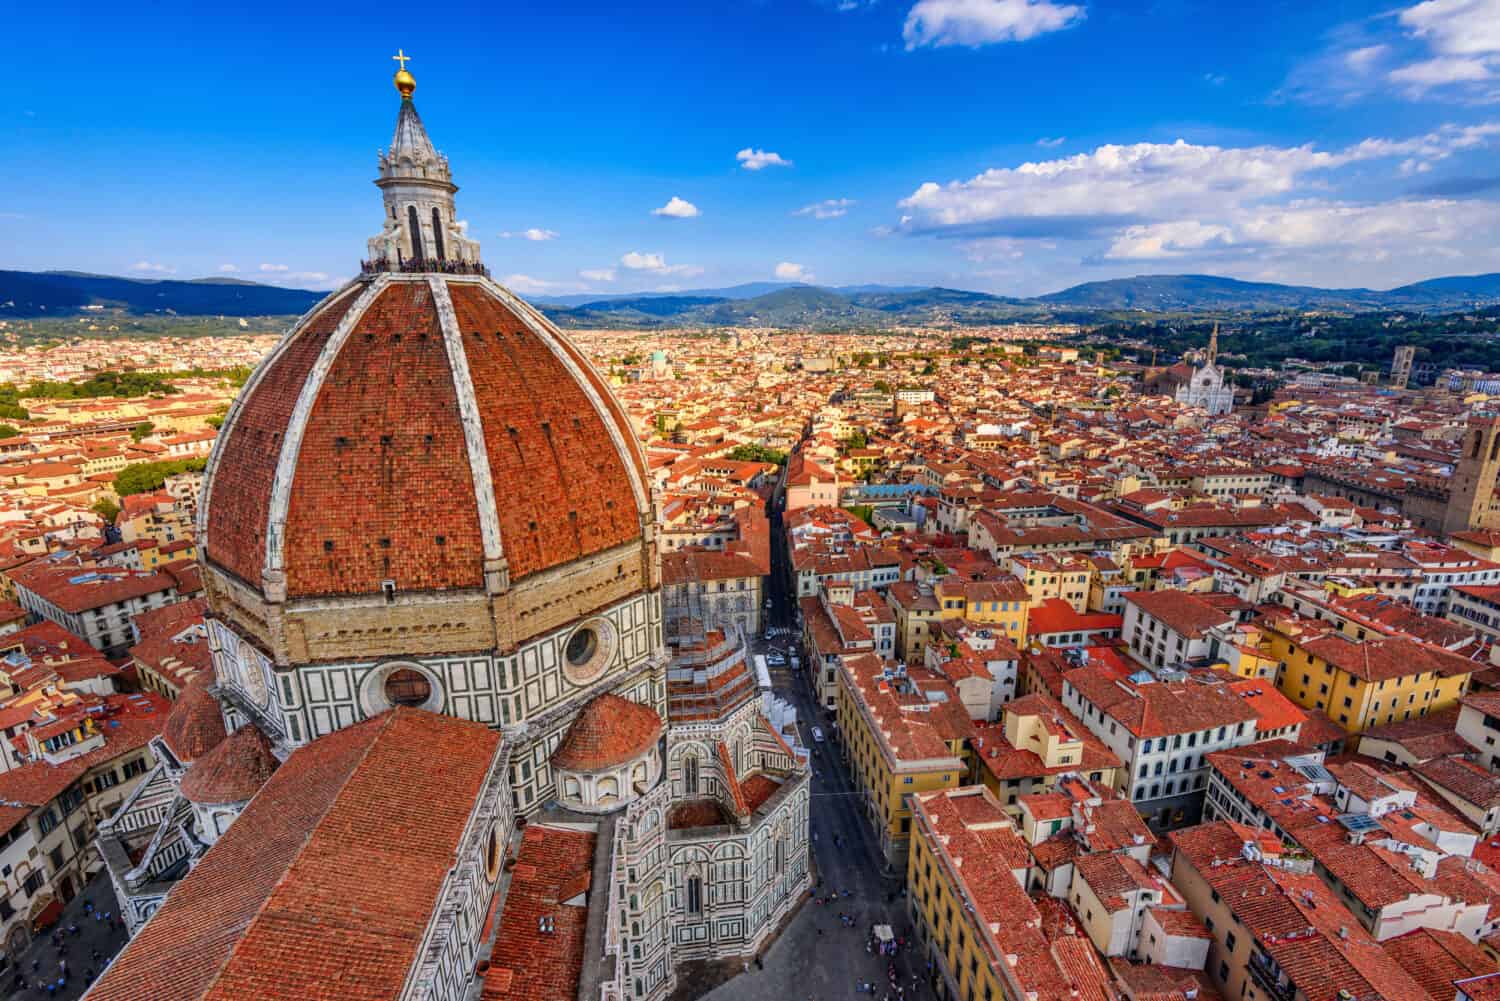 Duomo di Firenze.  Basilica di Santa Maria del Fiore (Basilica di Santa Maria del Fiore) a Firenze, Italia.  Il Duomo di Firenze è uno dei principali punti di riferimento di Firenze